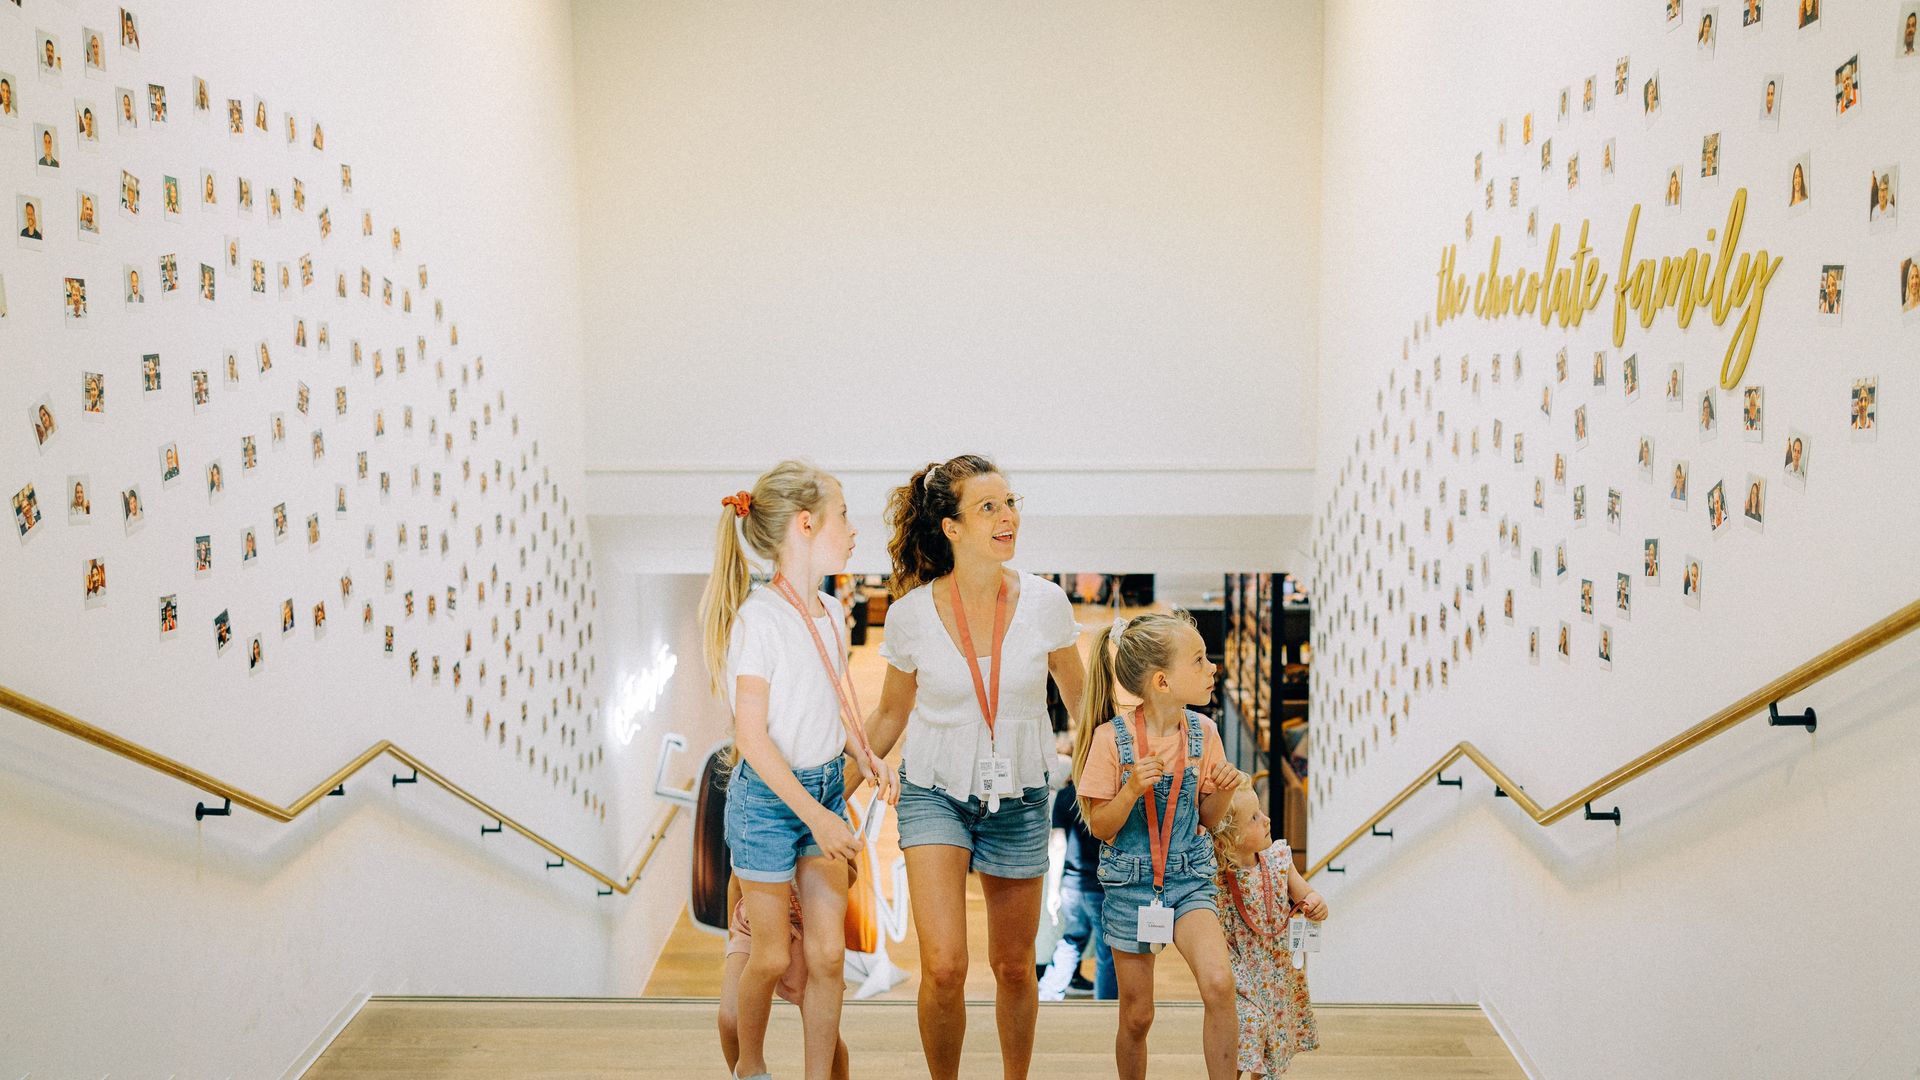 Mutter mit drei Kindern läuft Treppe in Museum hoch